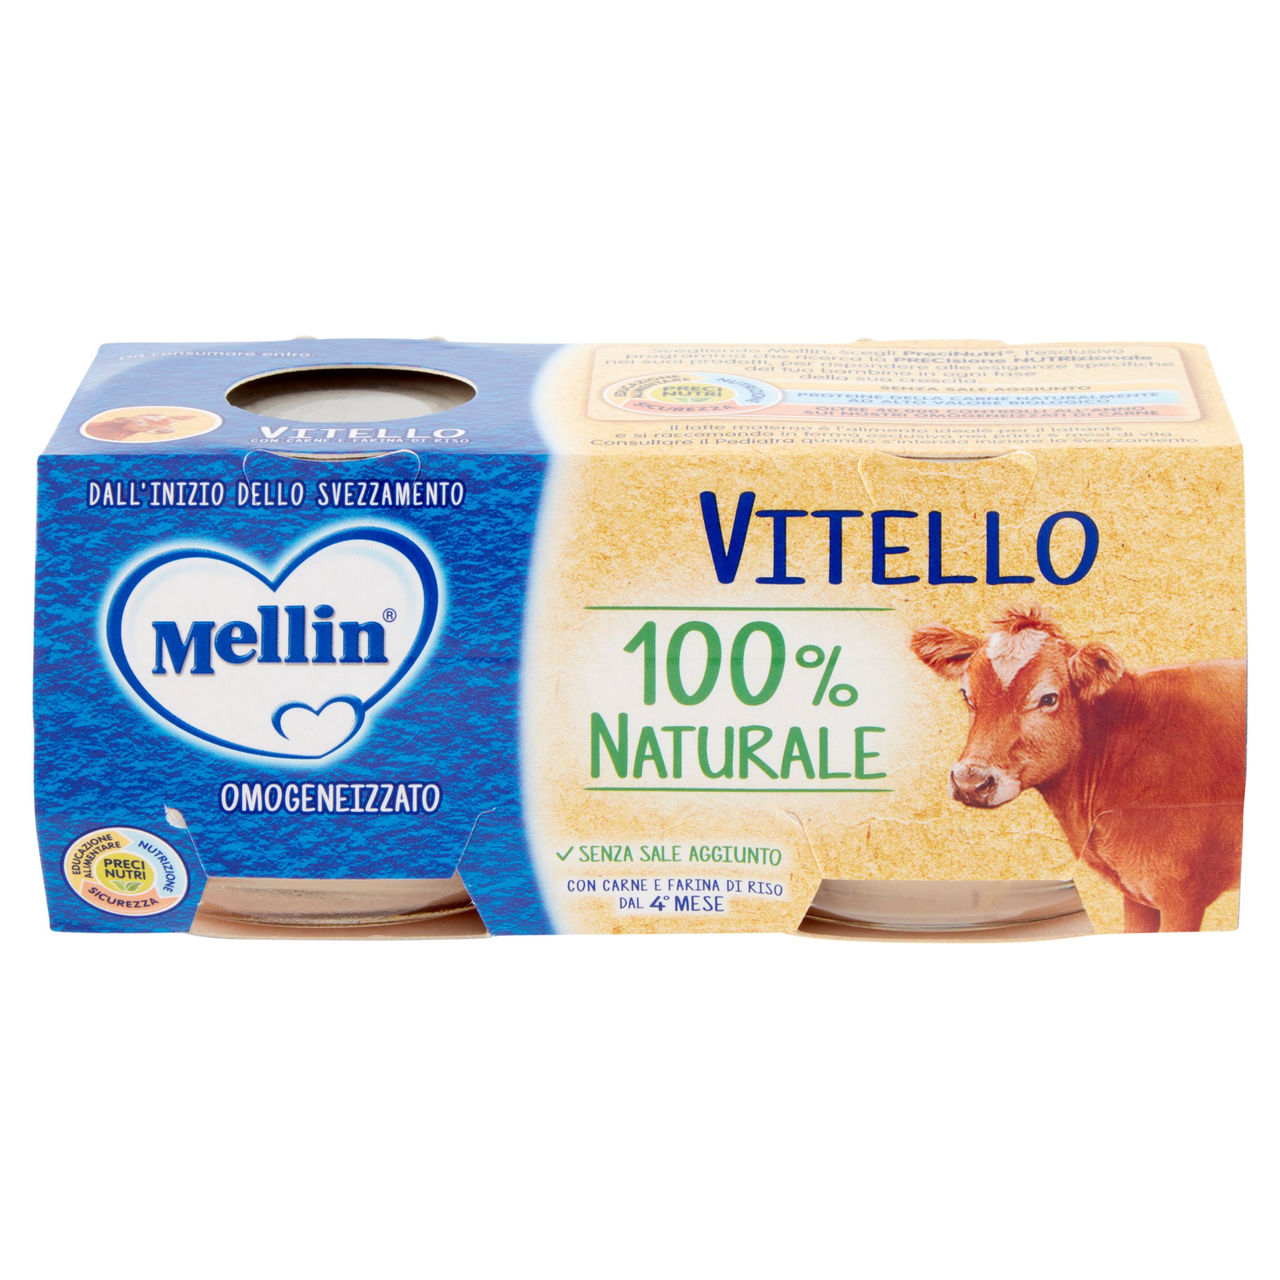 Mellin Vitello 100% Naturale Omogeneizzato 2 x 80 g